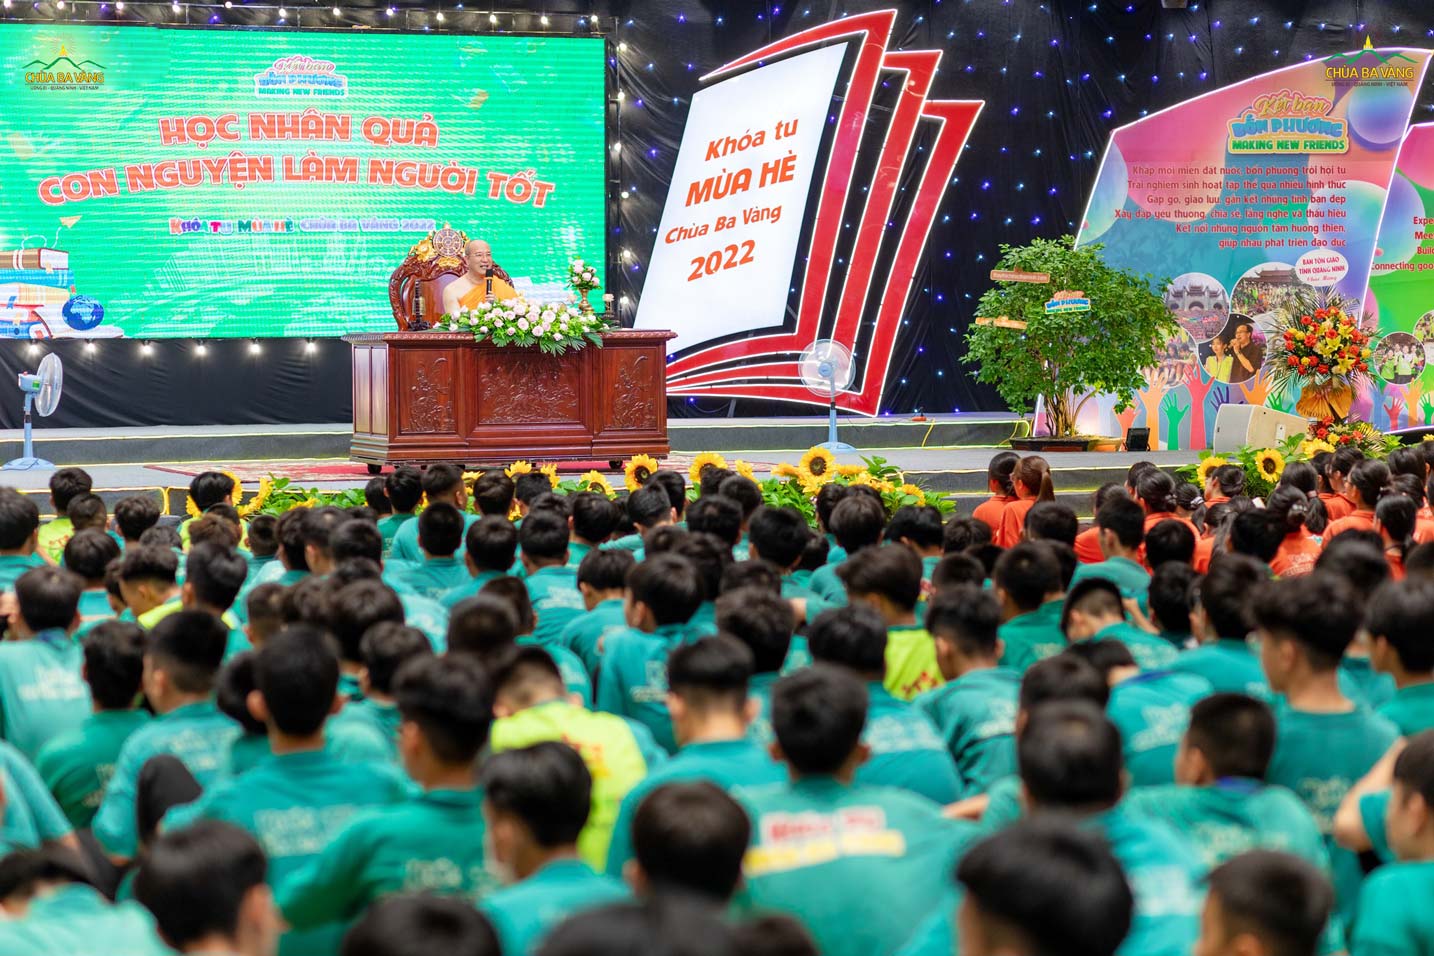 Sư Phụ Thích Trúc Thái Minh đã giảng giải cho các bạn khóa sinh học hiểu về nhân quả để trở thành một người tốt